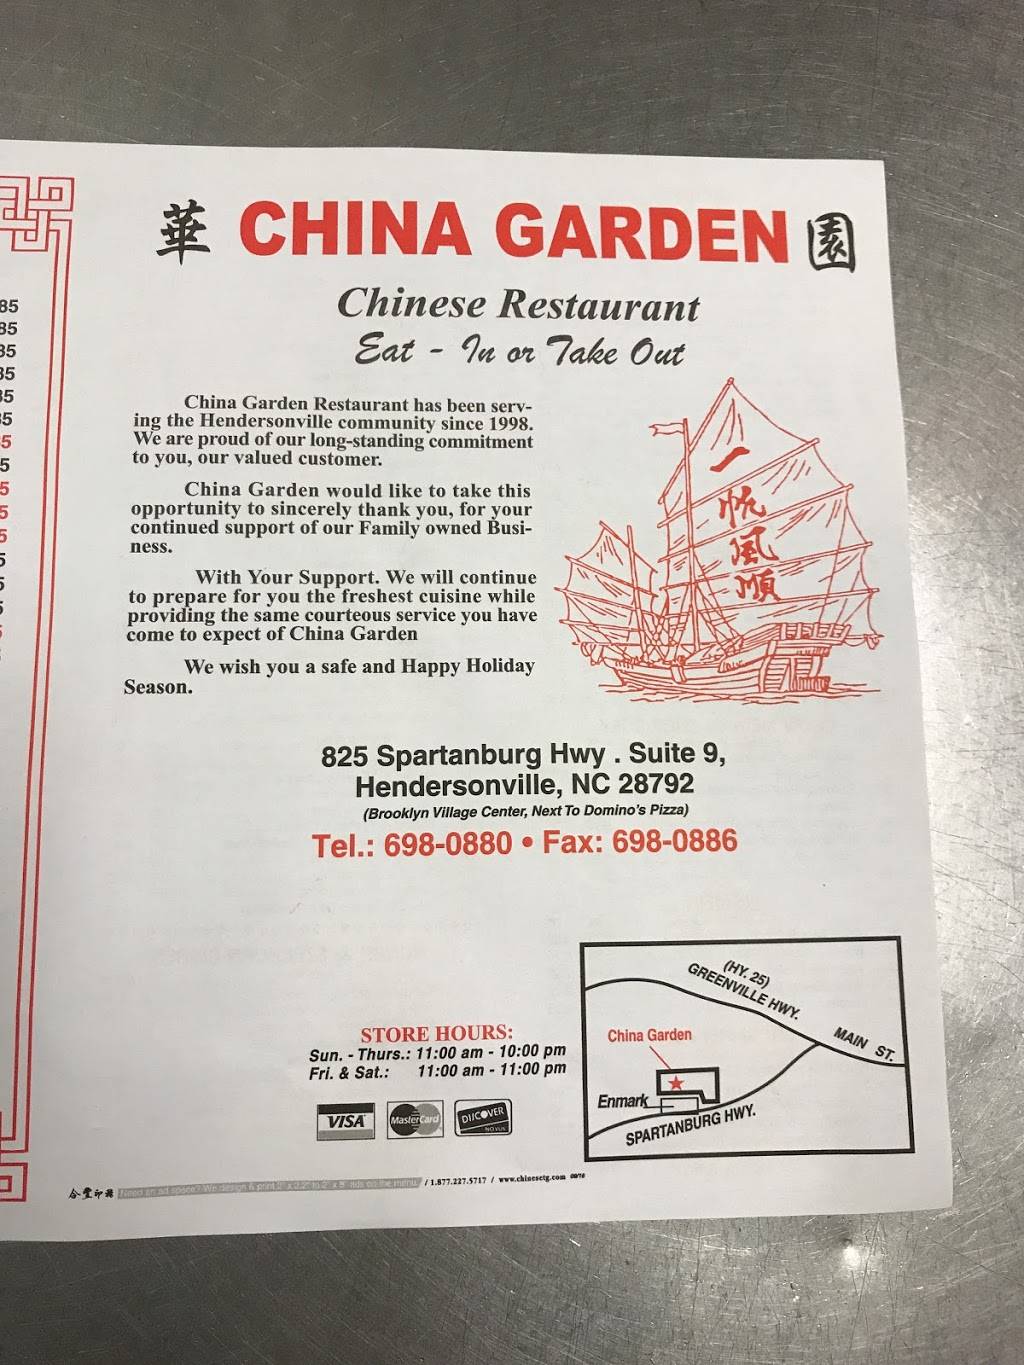 China Garden Restaurant 825 Spartanburg Hwy 9 Hendersonville